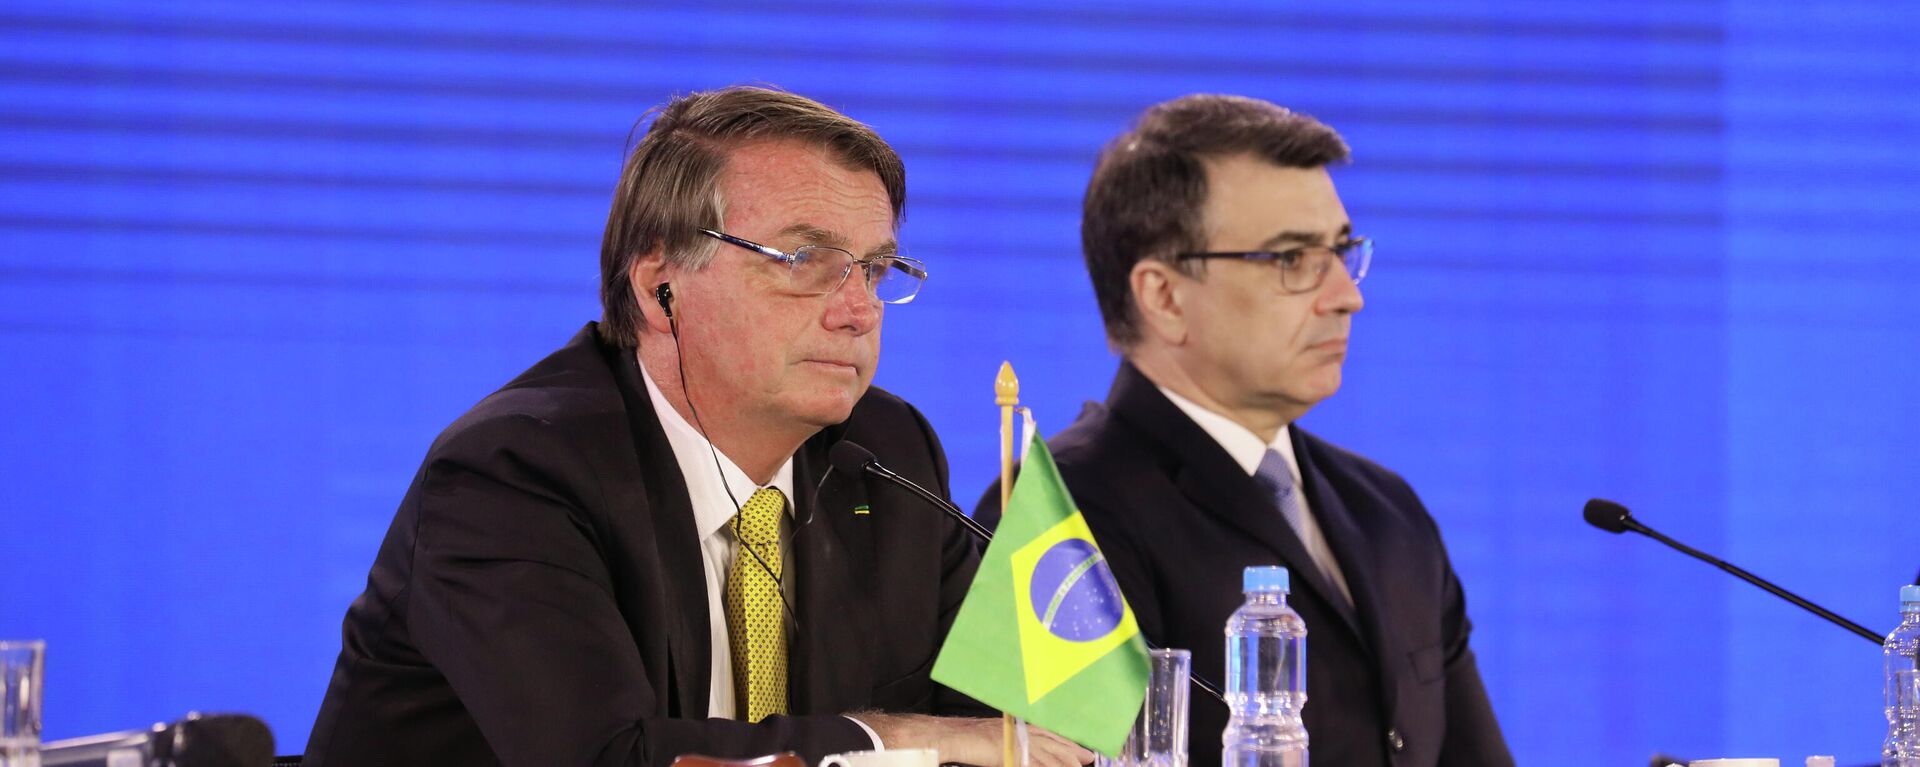 Presidente brasileiro, Jair Bolsonaro (à esquerda), e ministro das Relações Exteriores do Brasil, Carlos França, na LIX Cúpula de Chefes de Estado do Mercosul e Estados Associados, em 17 de dezembro de 2021 - Sputnik Brasil, 1920, 12.01.2022